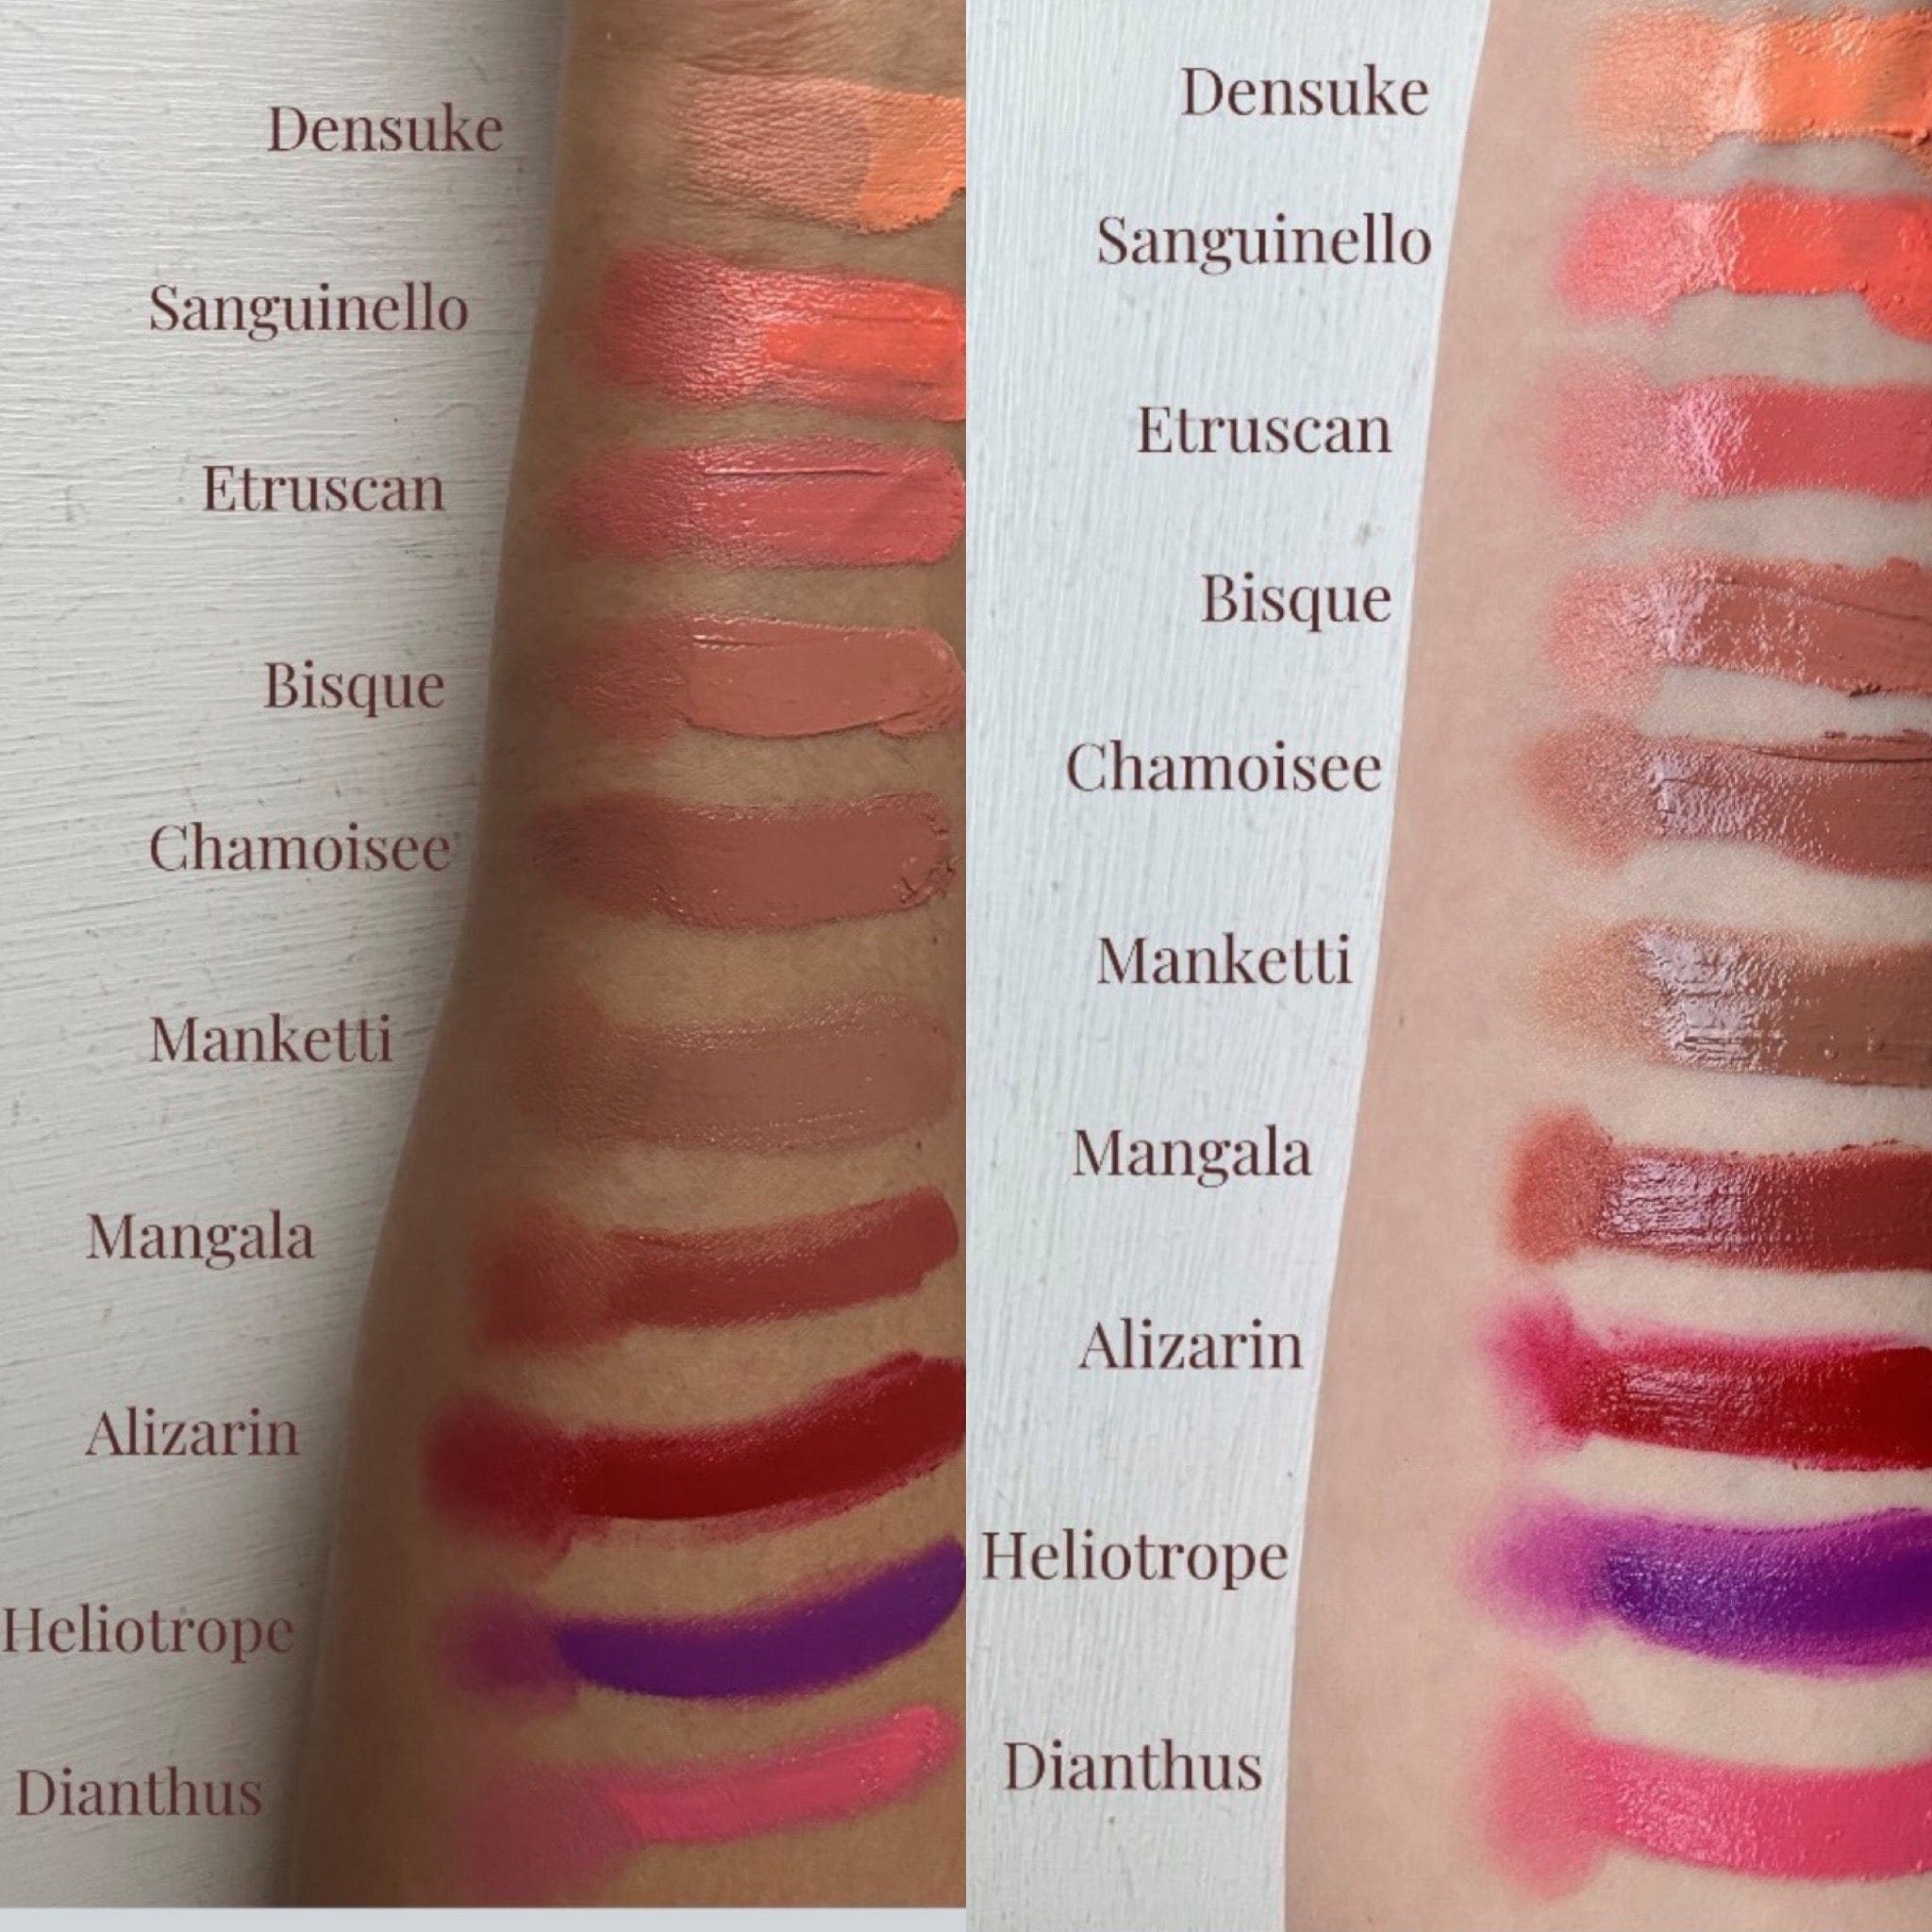 Manasi 7 lipstick, multi-use All Over Colour - Etruscan sunja link - canada